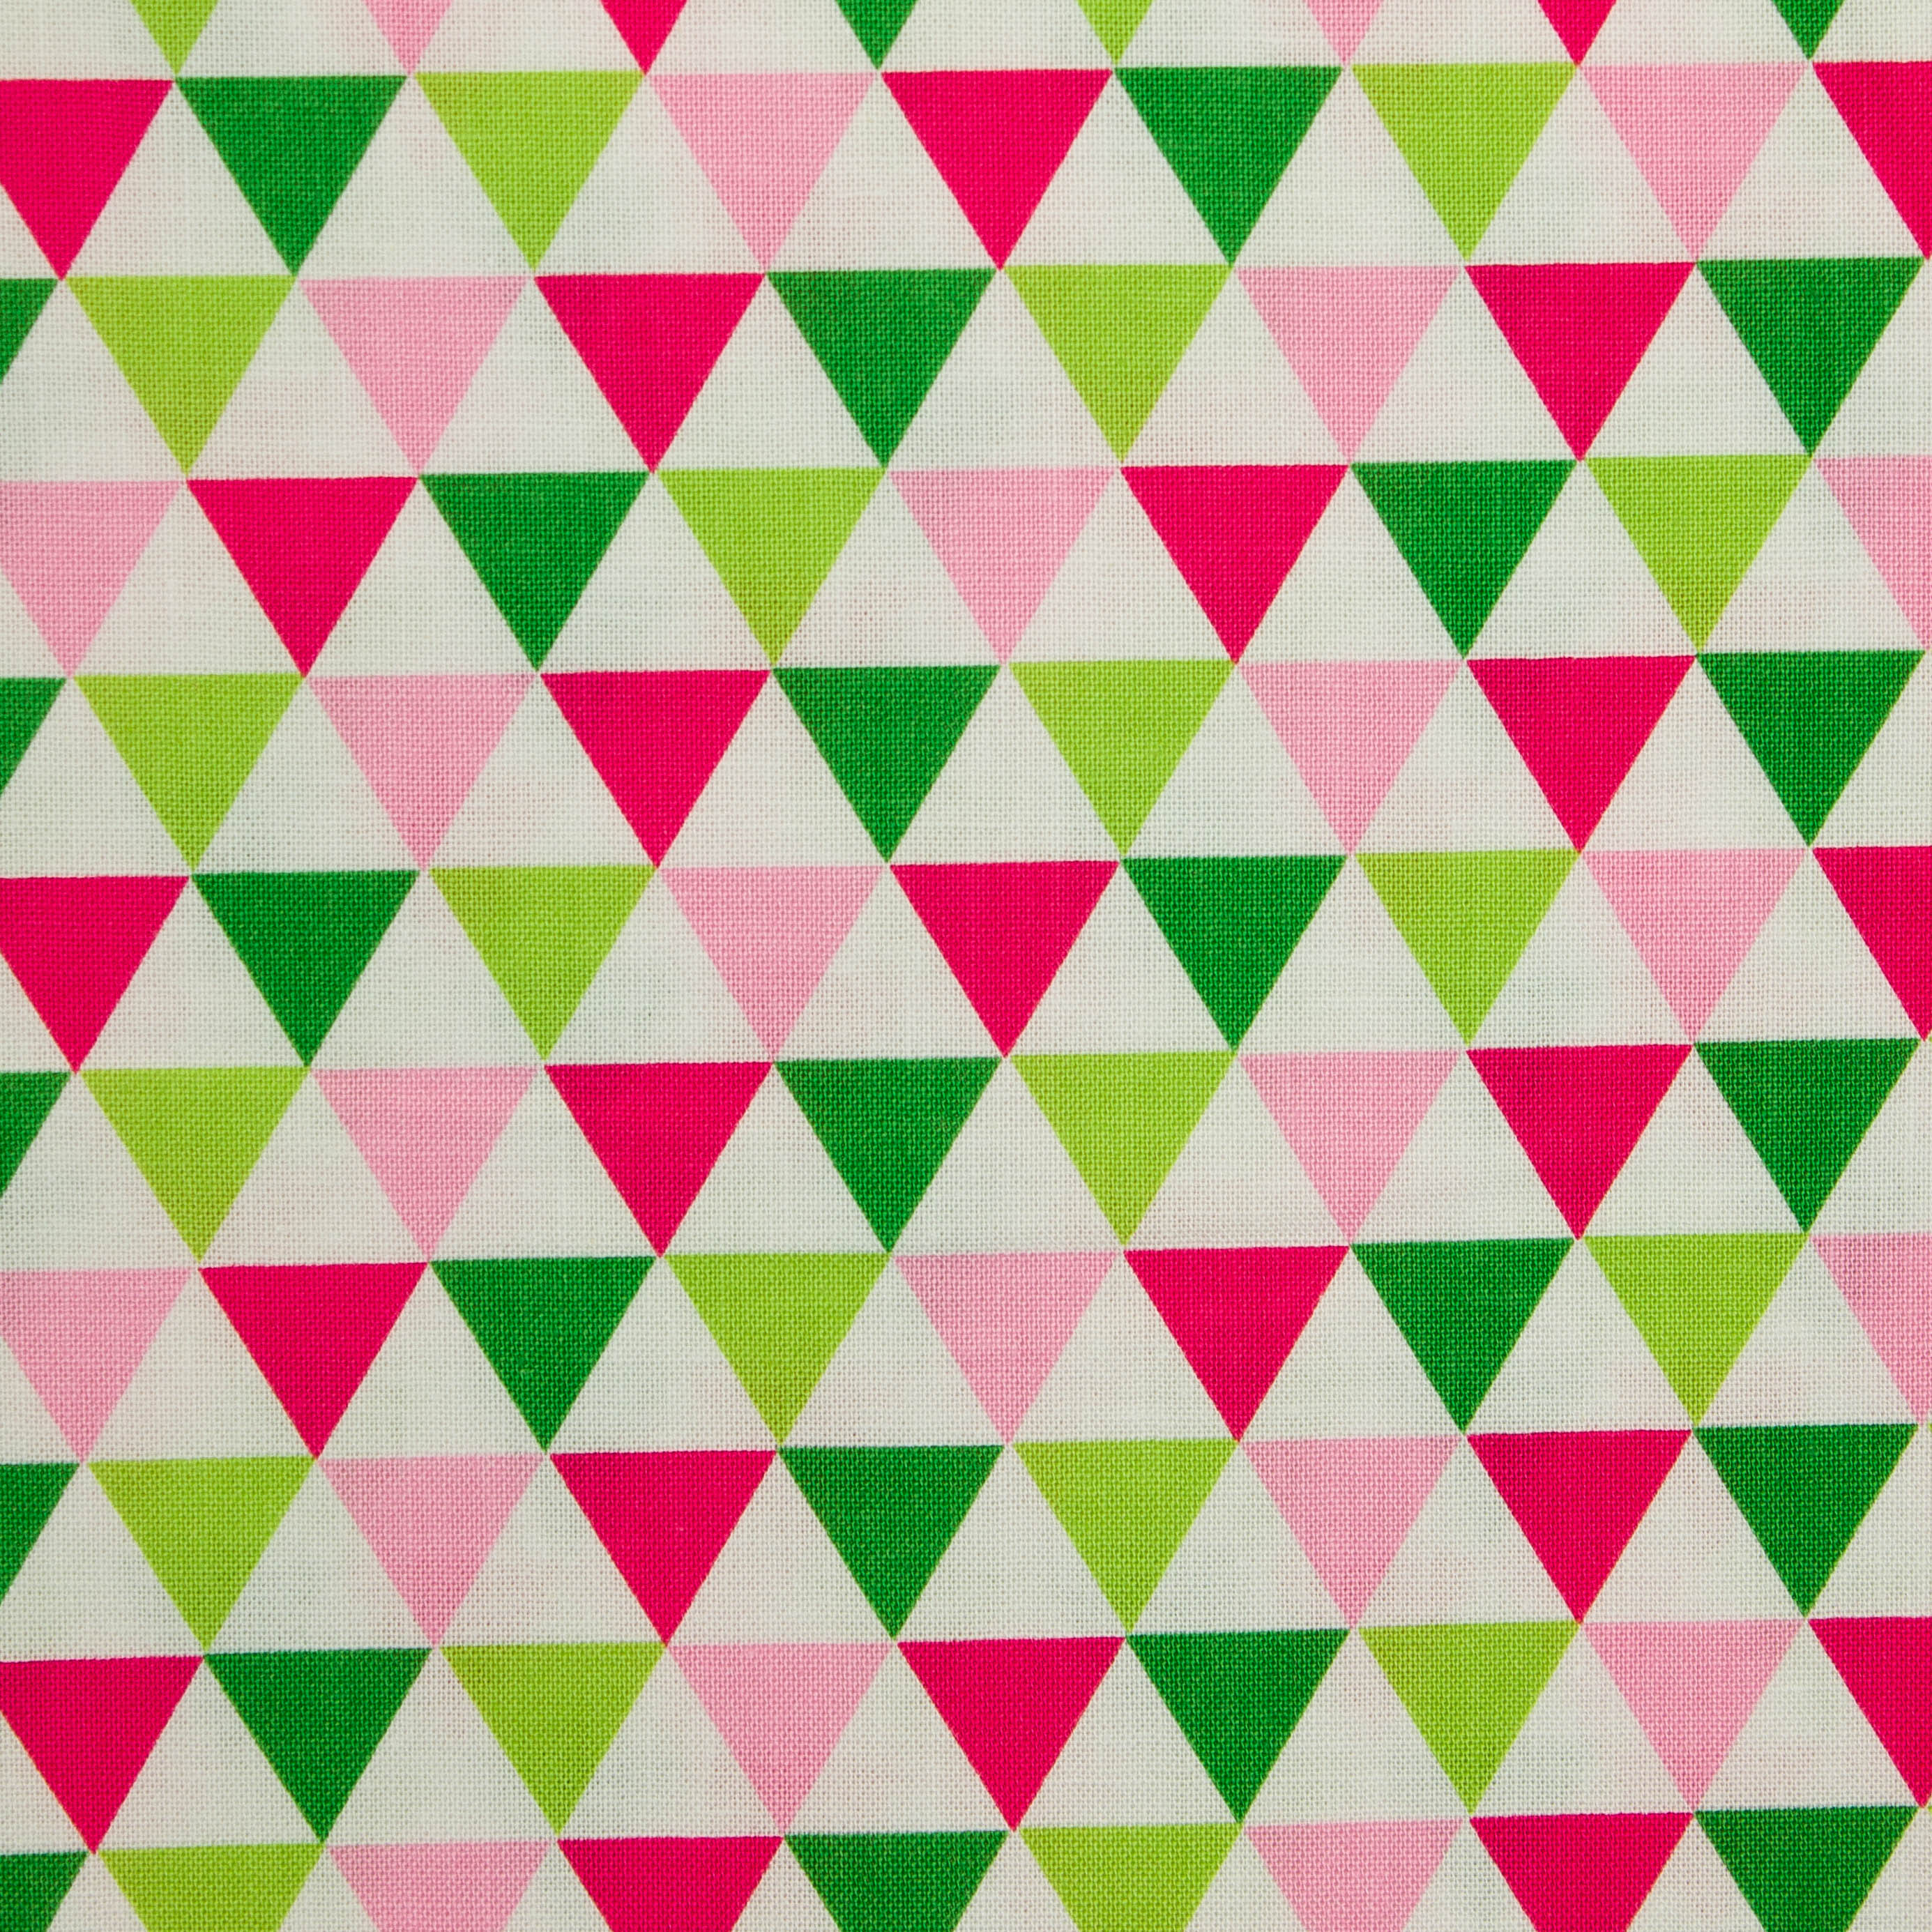 Katoen wit met roze, groene en rode driehoeken